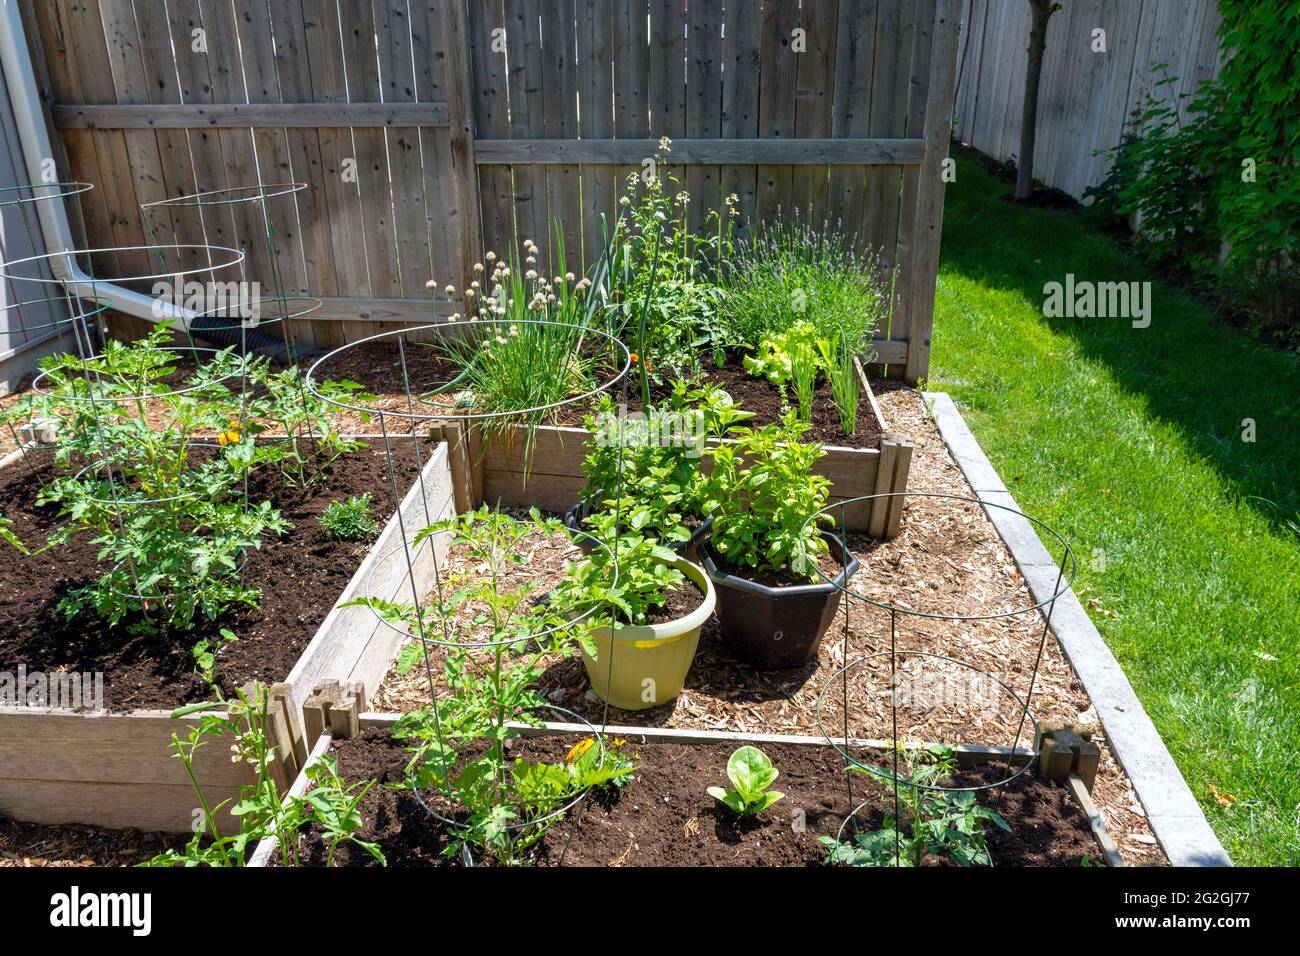 Questo piccolo giardino urbano del cortile contiene i letti rialzati quadrati di piantatura per la coltivazione di verdure ed erbe durante l'estate. Foto Stock